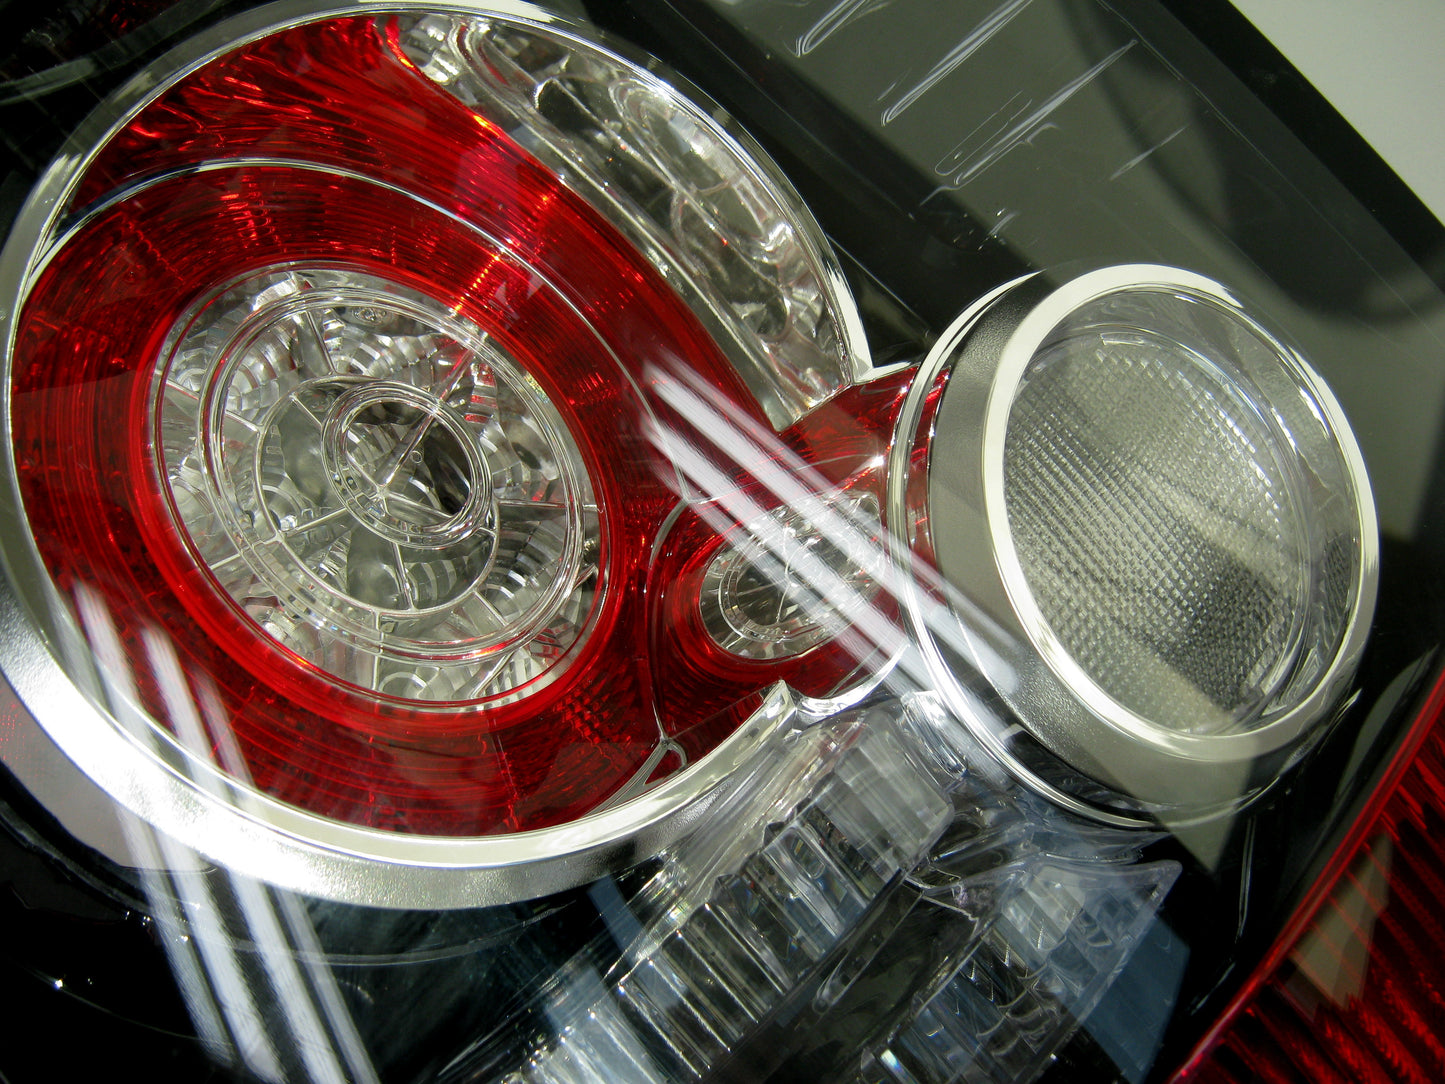 2012 Spec Rear LED Light - LH for Range Rover Sport